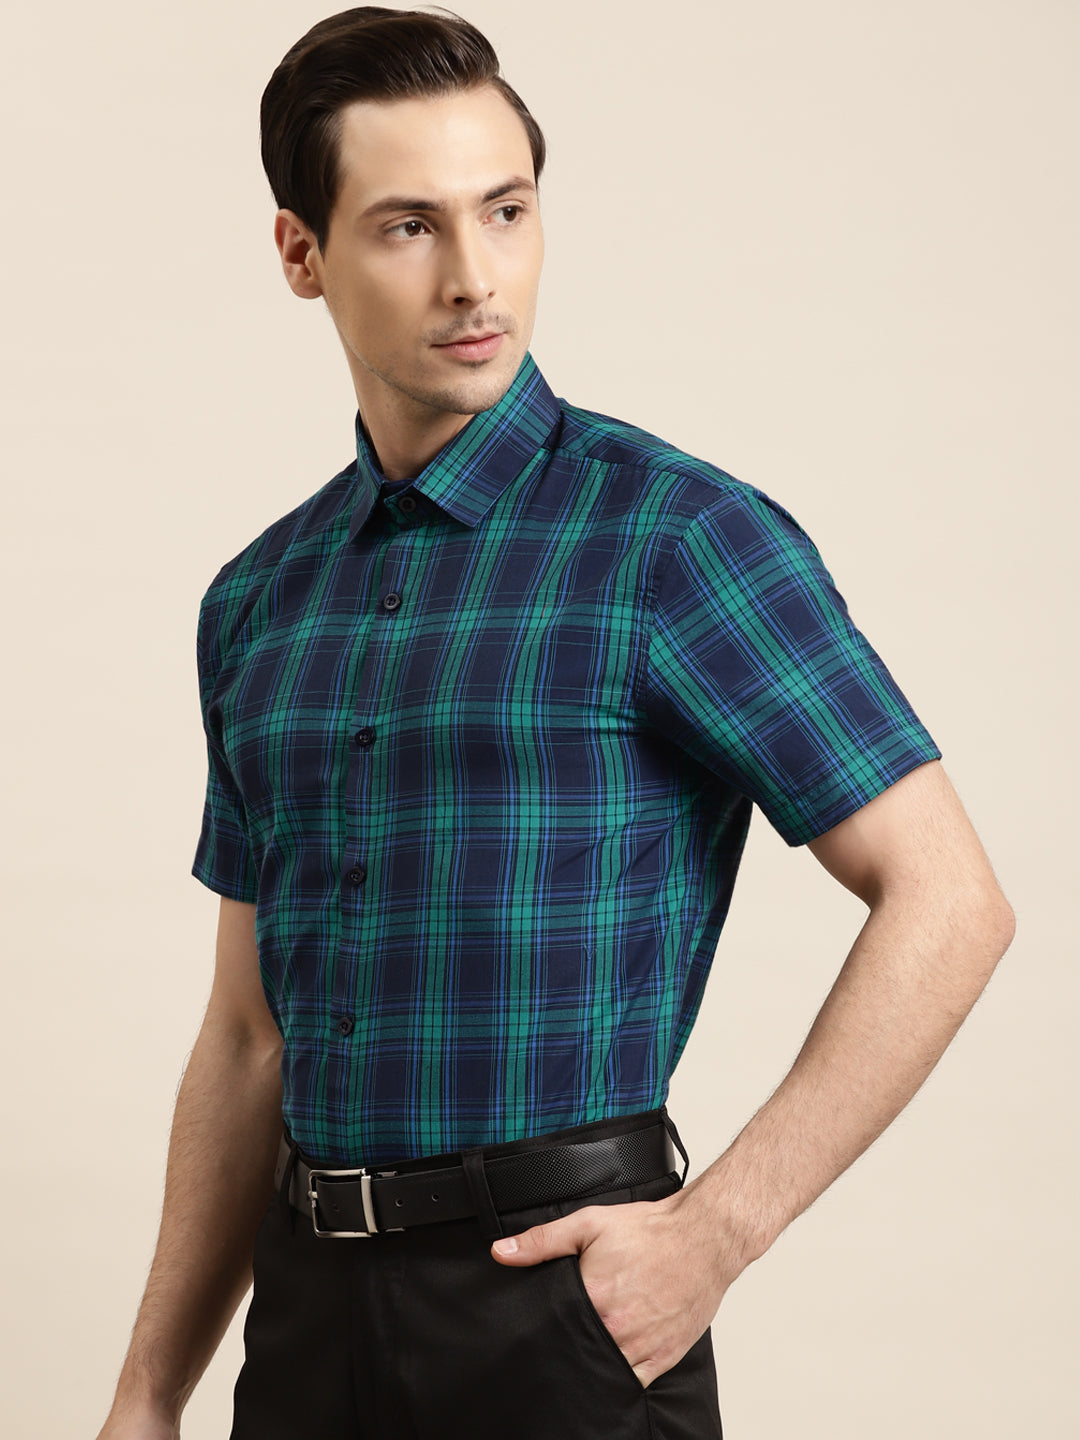 Men's Cotton Navy & Green Formal Shirt - Sojanya